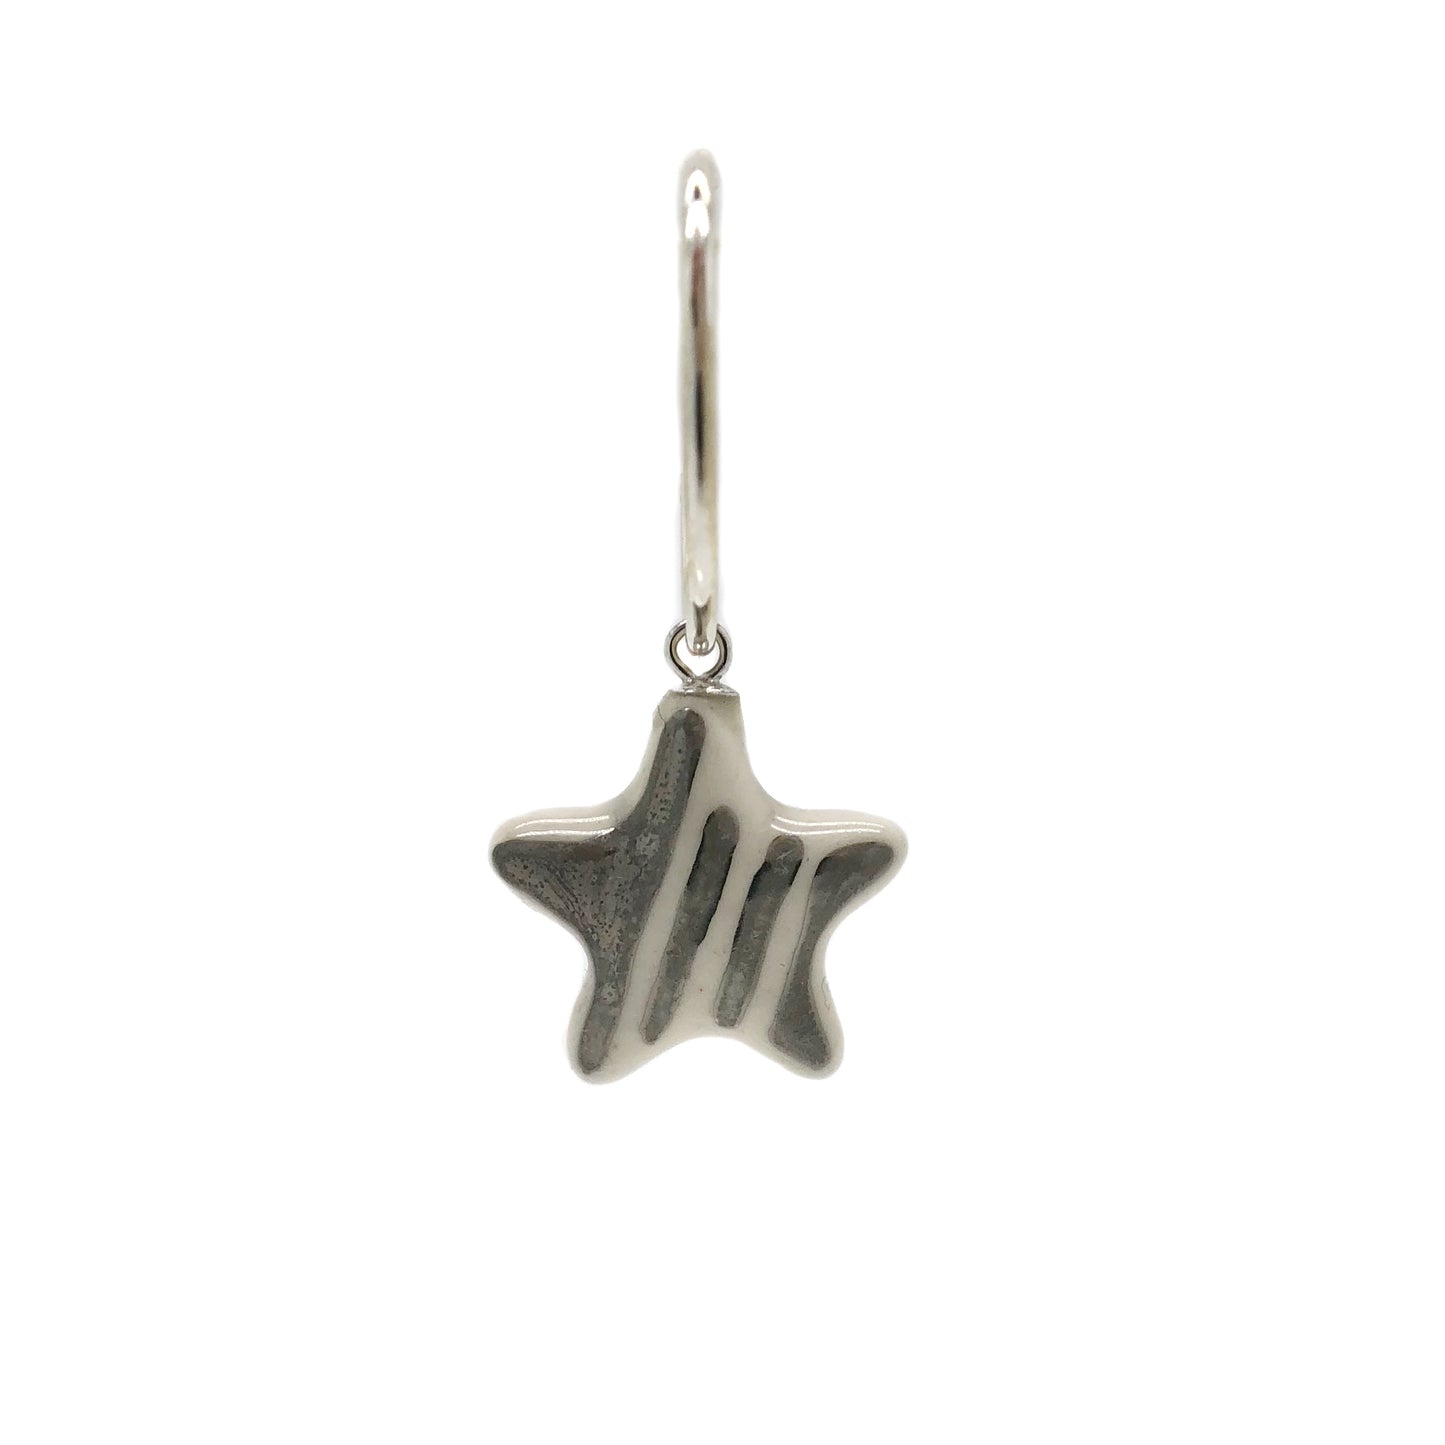 Single hoop earrings with star